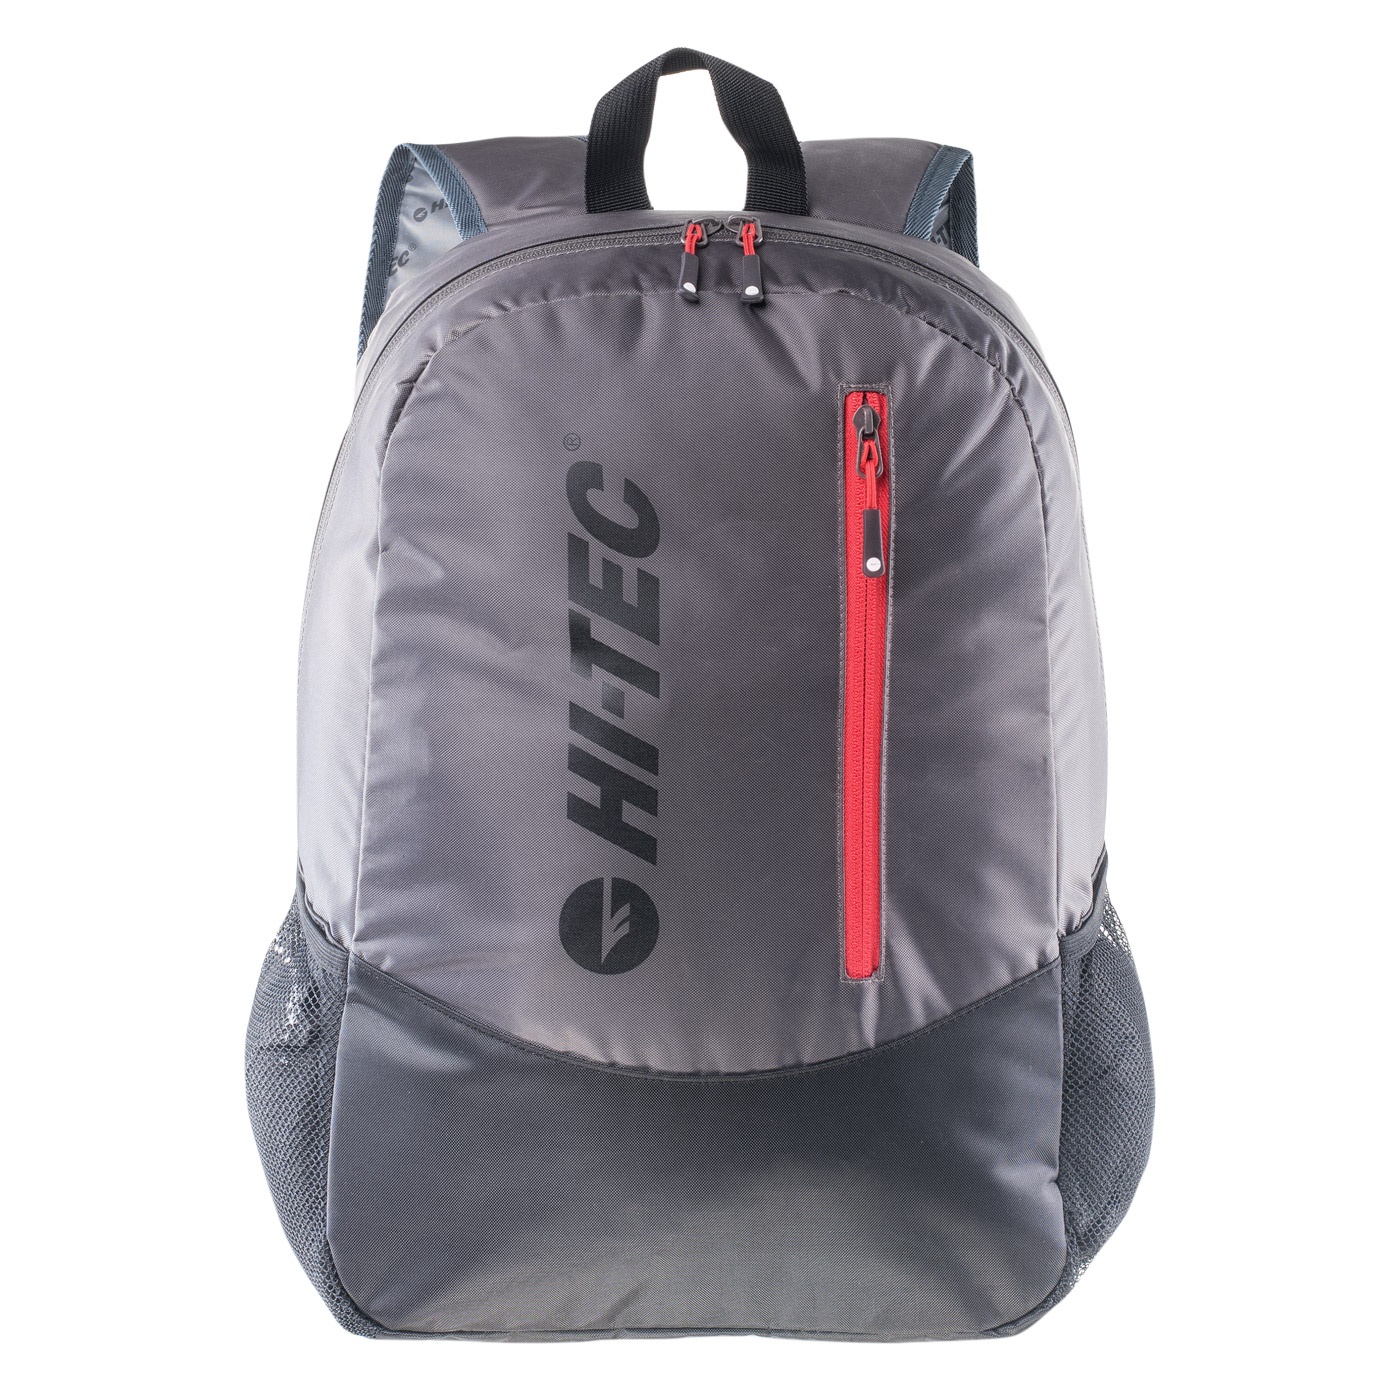 Hi-Tec 18L спортивный рюкзак